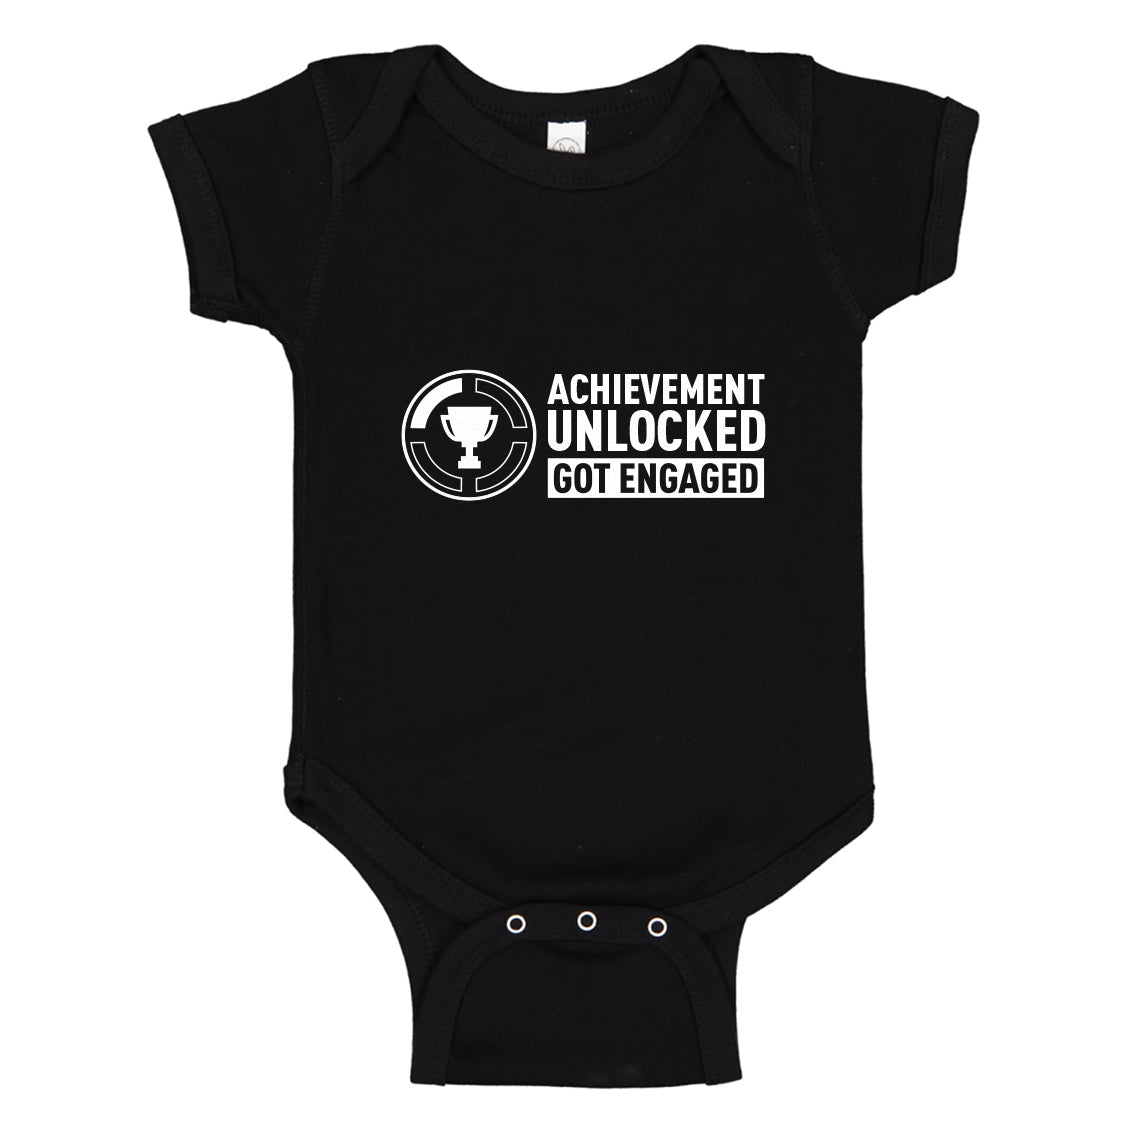 Baby Onesie Achievement Unlocked Got Engaged 100% Cotton Infant Bodysuit